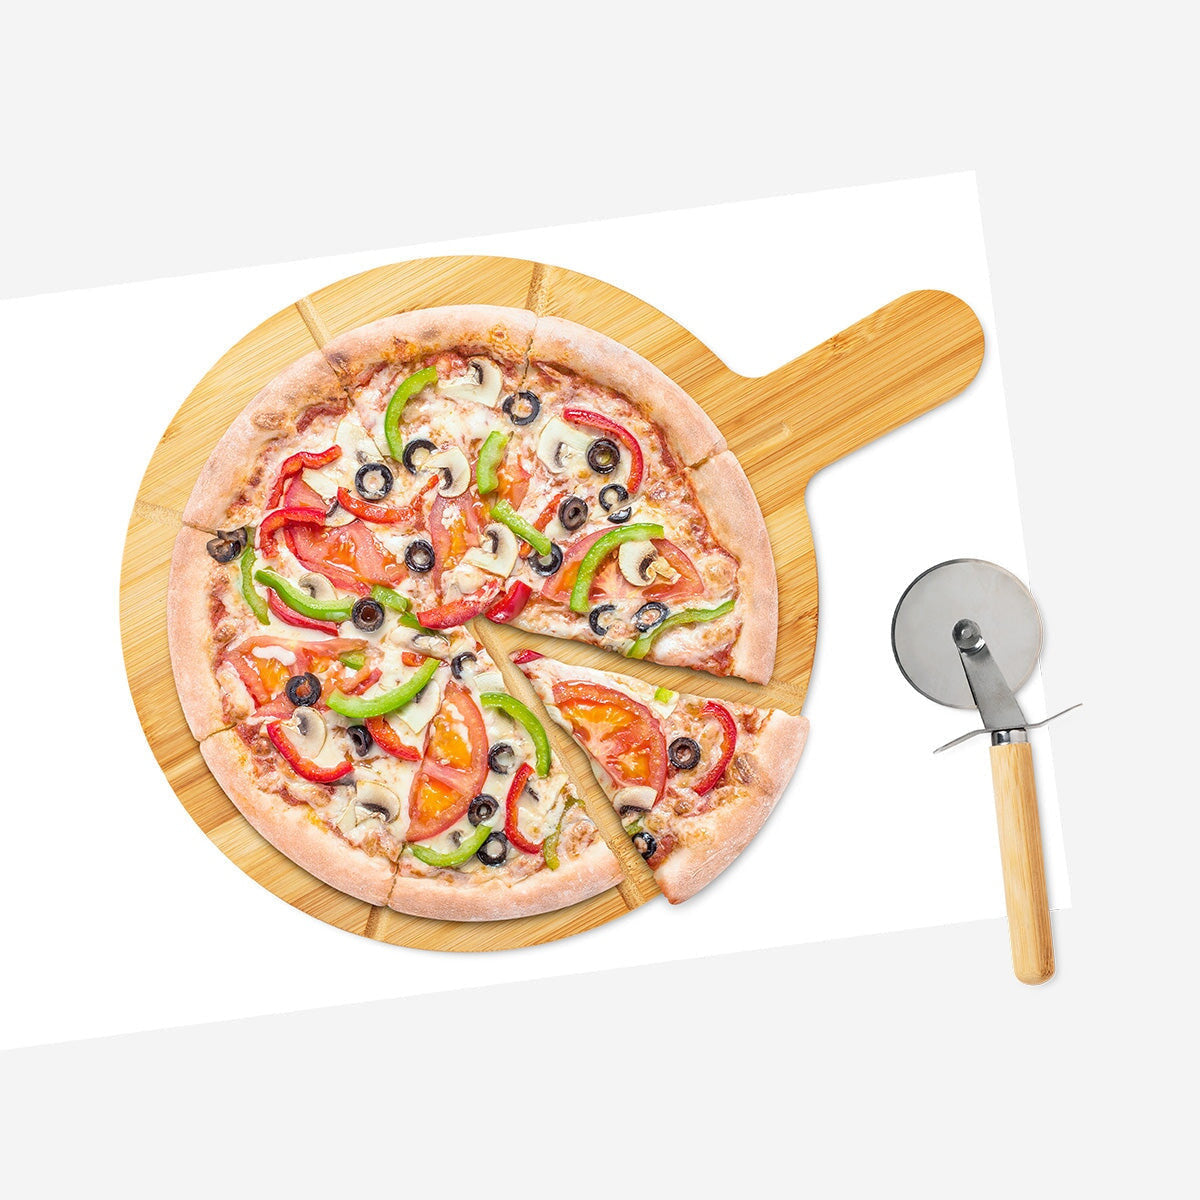 Forbici tagliapizza e paletta colore rosso - PIZZA! by BALVI Balena Design